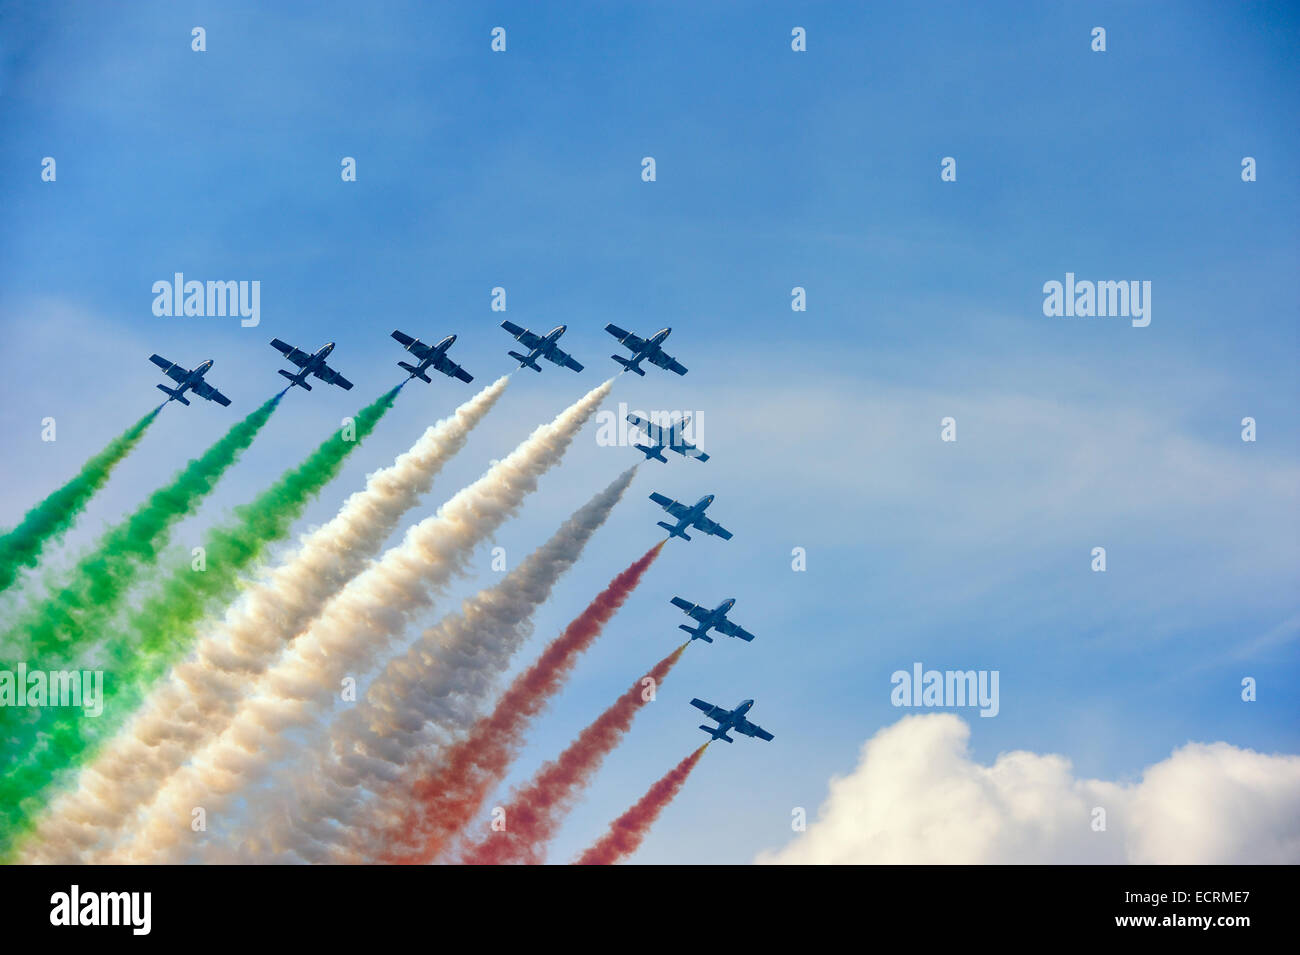 Frecce Tricolori rendendo la bandiera italiana con il fumo. Foto Stock